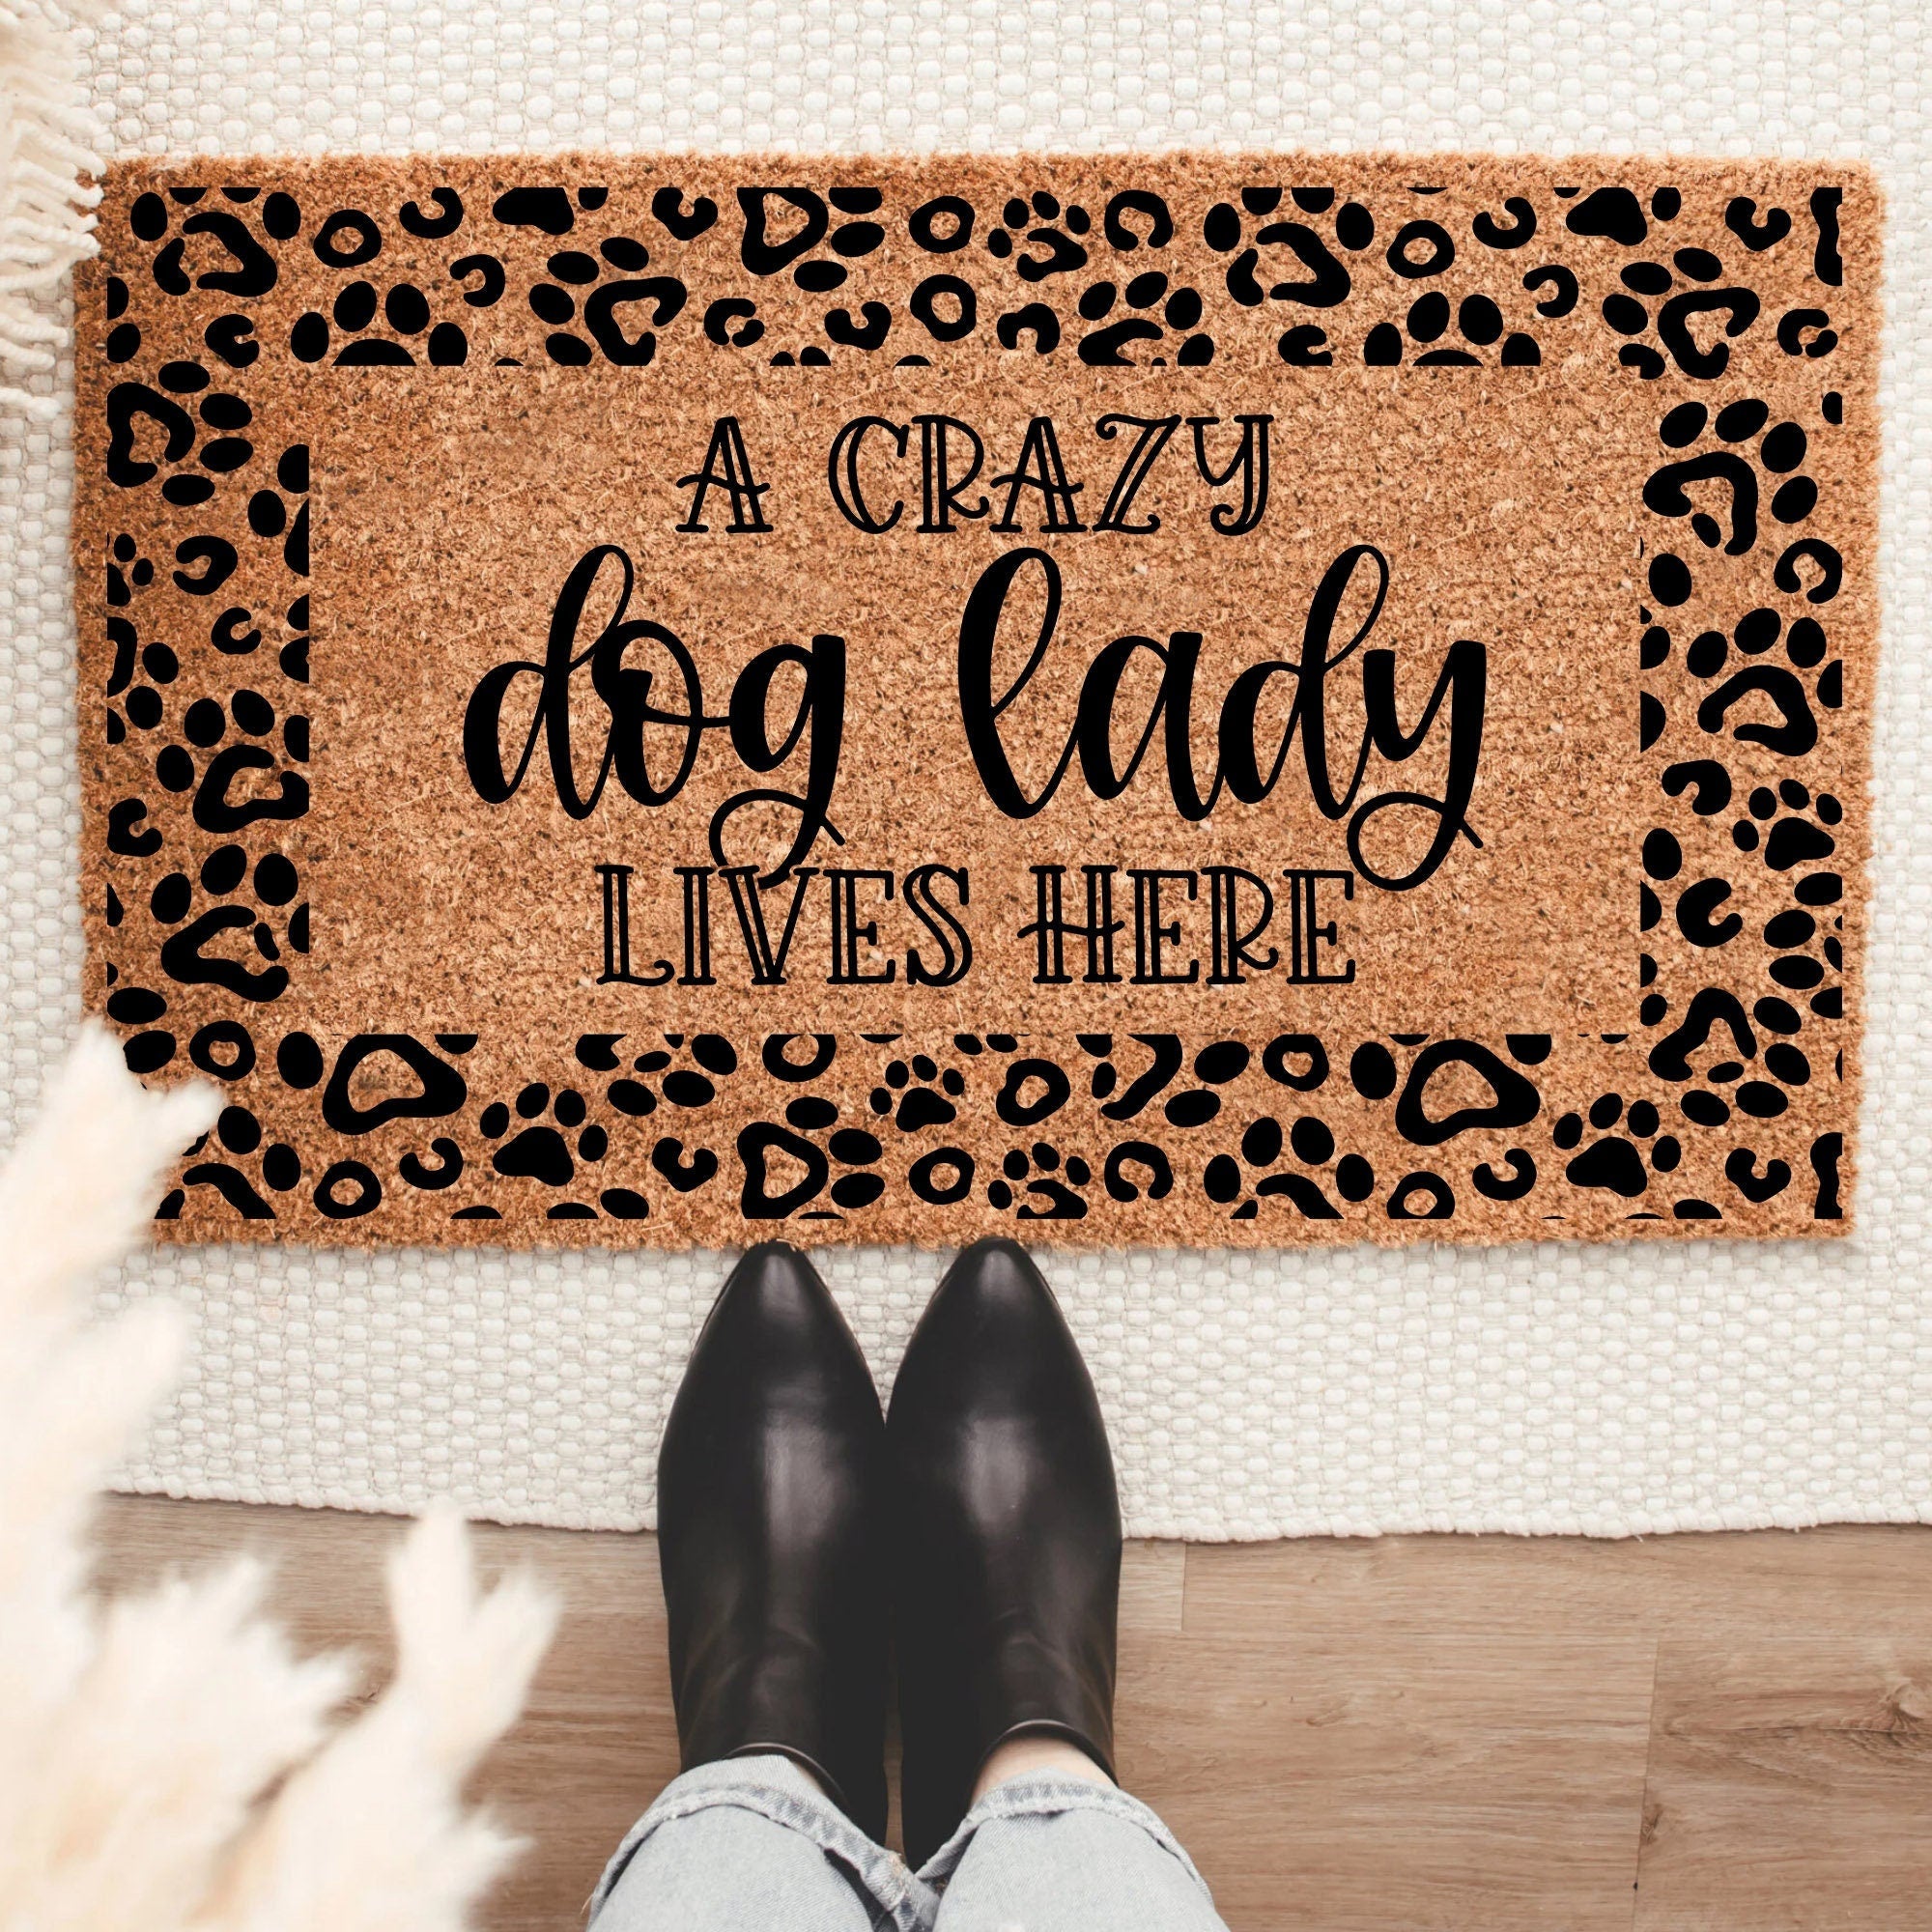 A Crazy Dog Lady Lives Here Doormat, Housewarming Gift, Welcome Doormat, Front Doormat, Personalize Doormat, Customized Doormat,